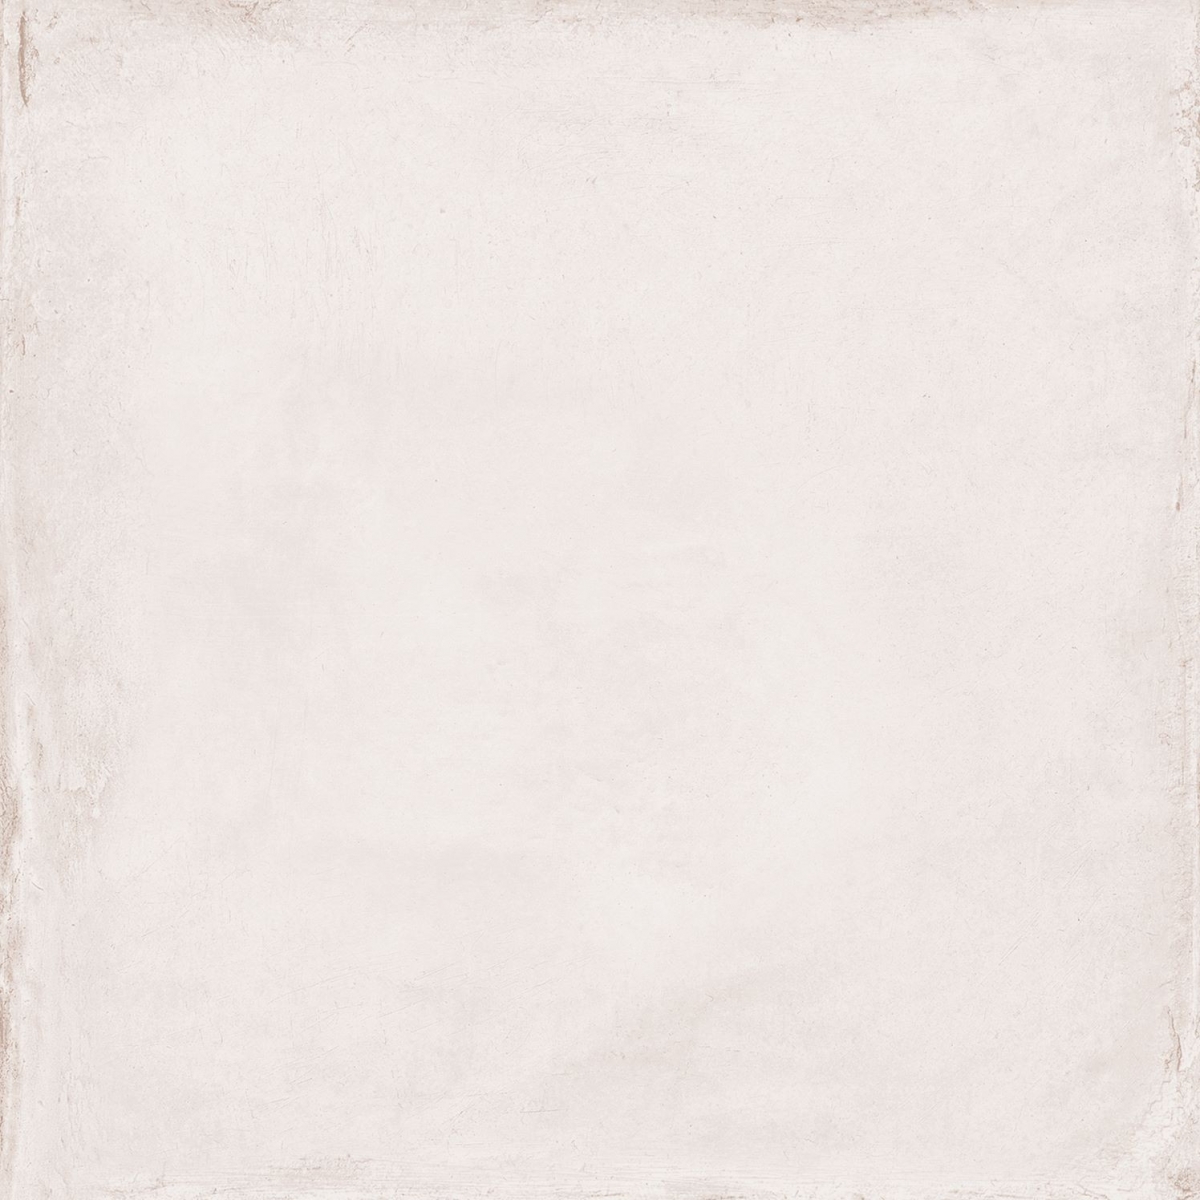 Triana White 25x25 (m2) - Série Triana - Marca Keros Ceramica